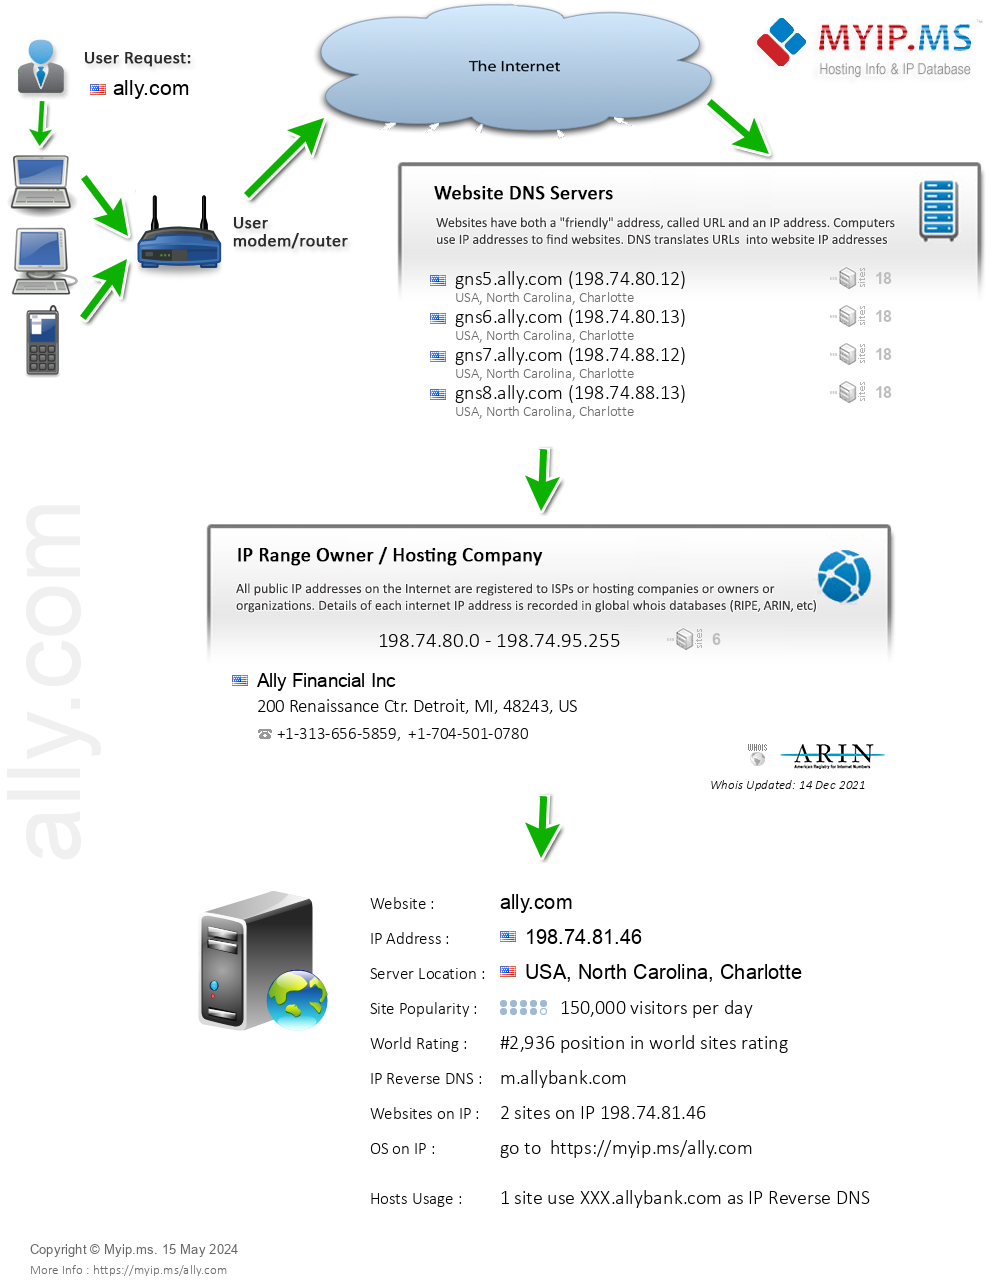 Ally.com - Website Hosting Visual IP Diagram